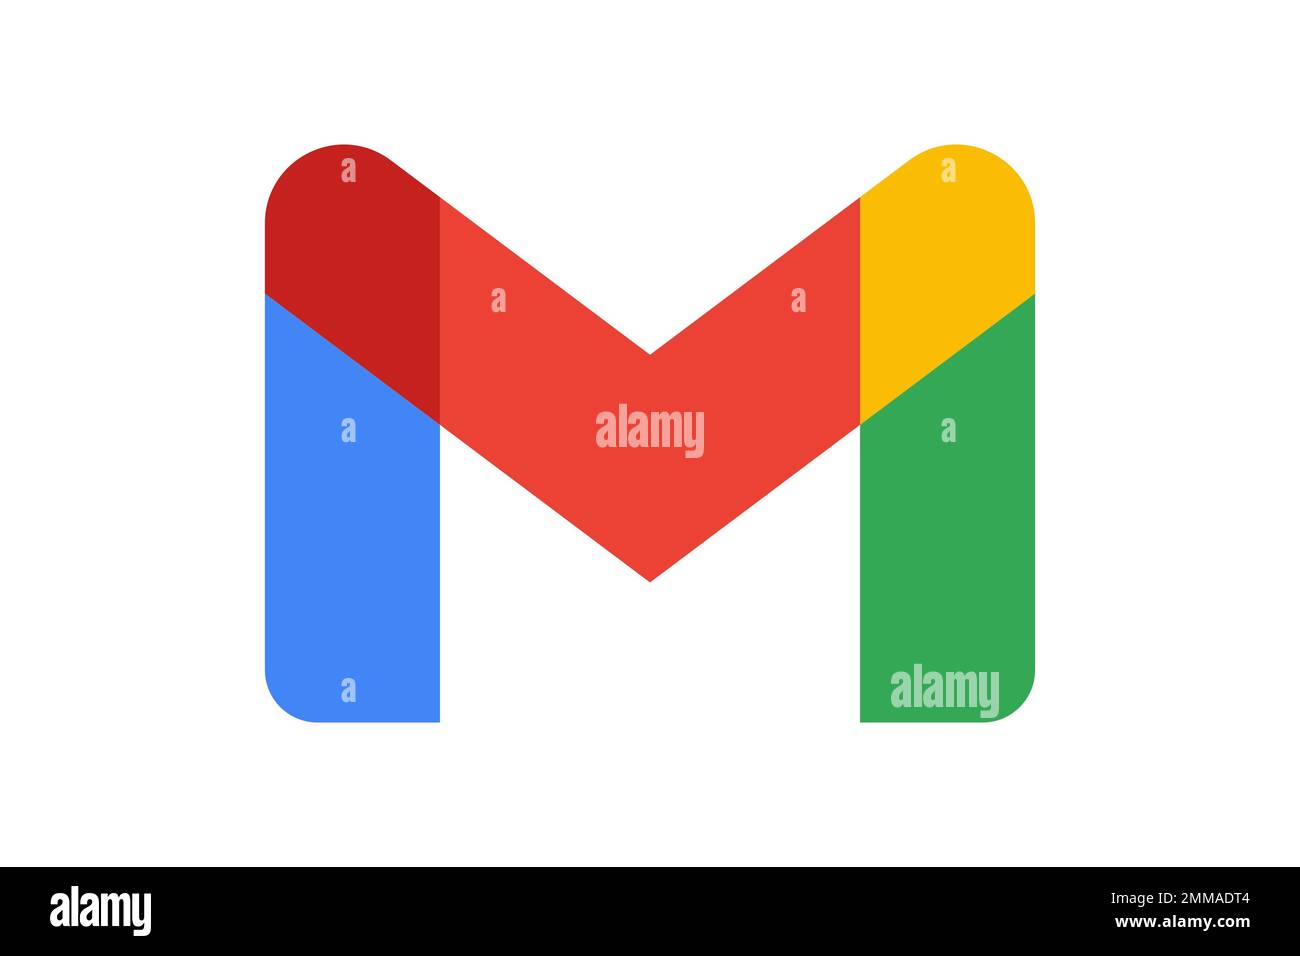 Gmail, White background, Logo, Brand name Stock Photo